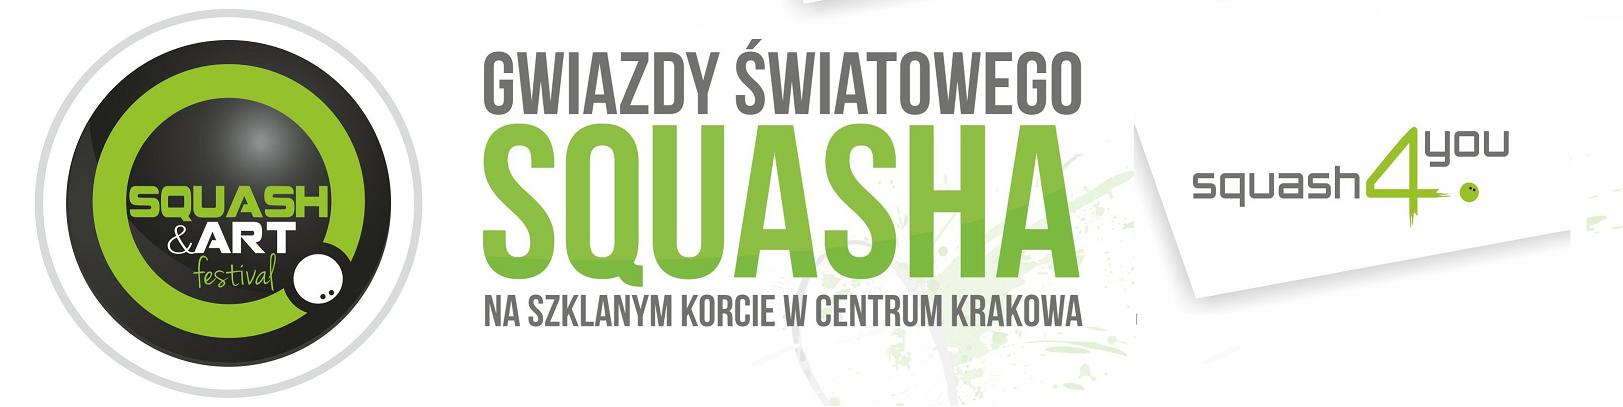 2014 06 26/28 Wyniki Turniejowe<br />Kraków. Squash4You. DMP 2014